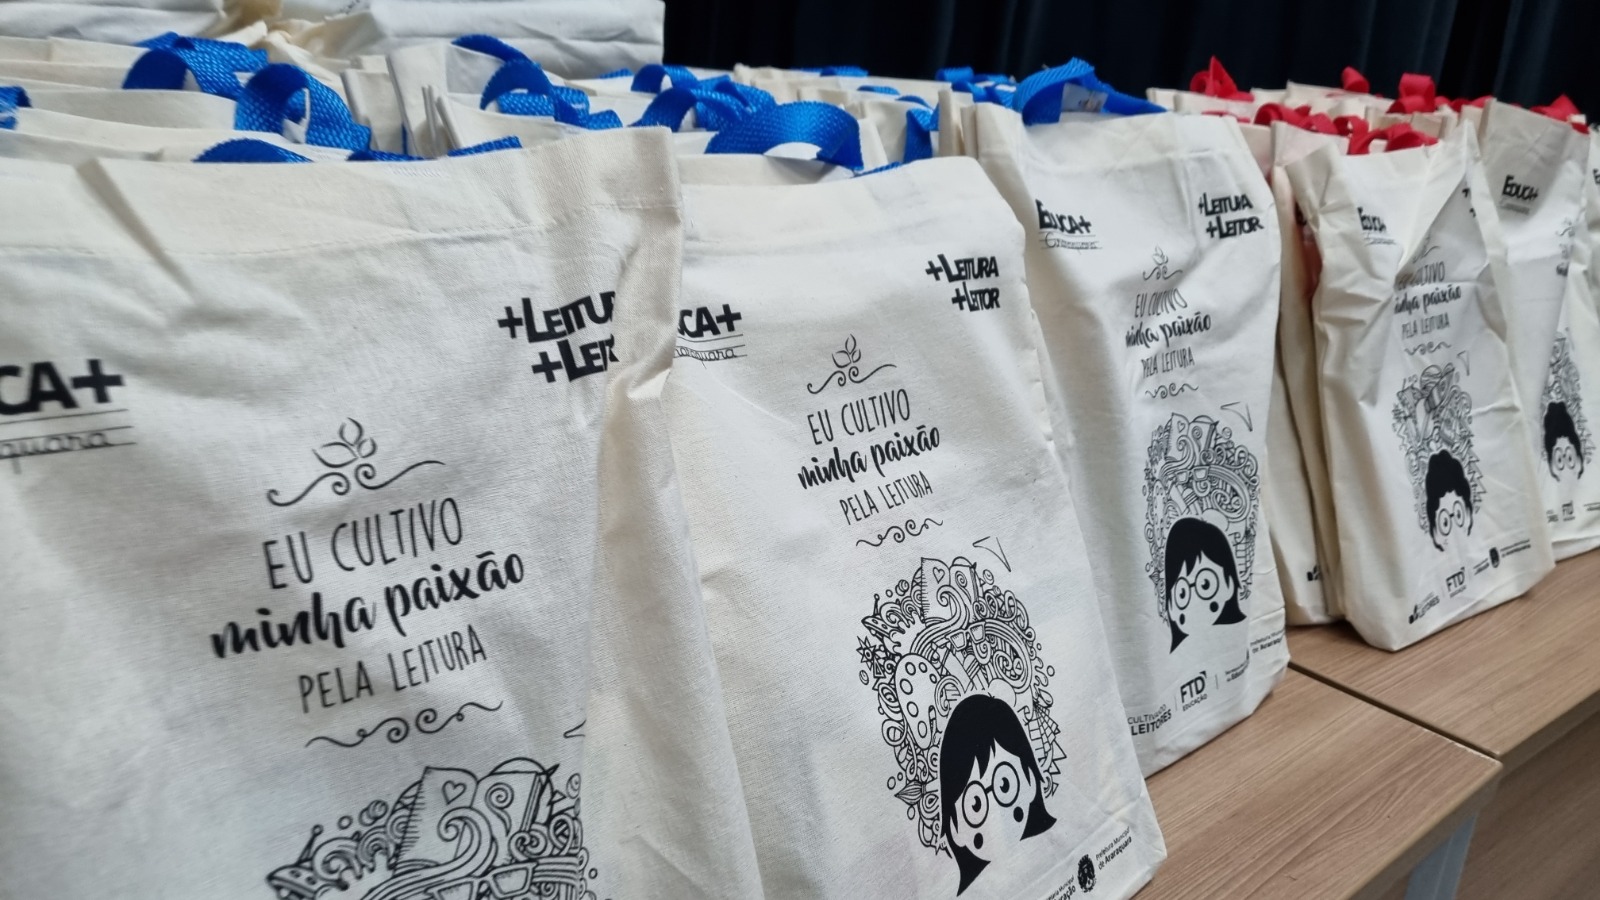 Prefeitura entrega Sacolas Literárias do programa "Educa Mais Araraquara"